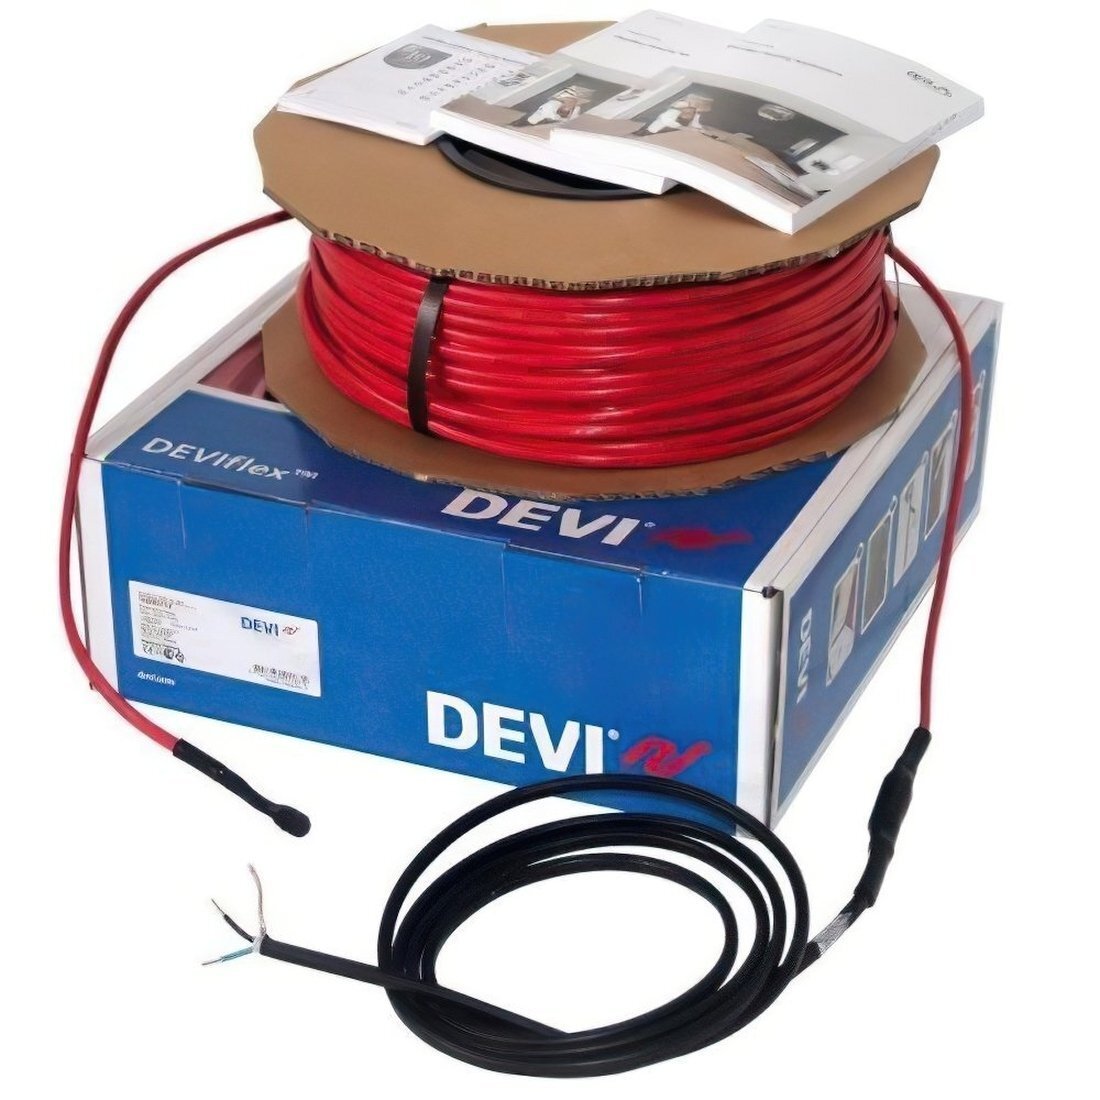 Теплый пол DEVI Flex двухжильный нагревательный кабель 18T, 1880 Вт, 230V, 105м (140F1249) фото 